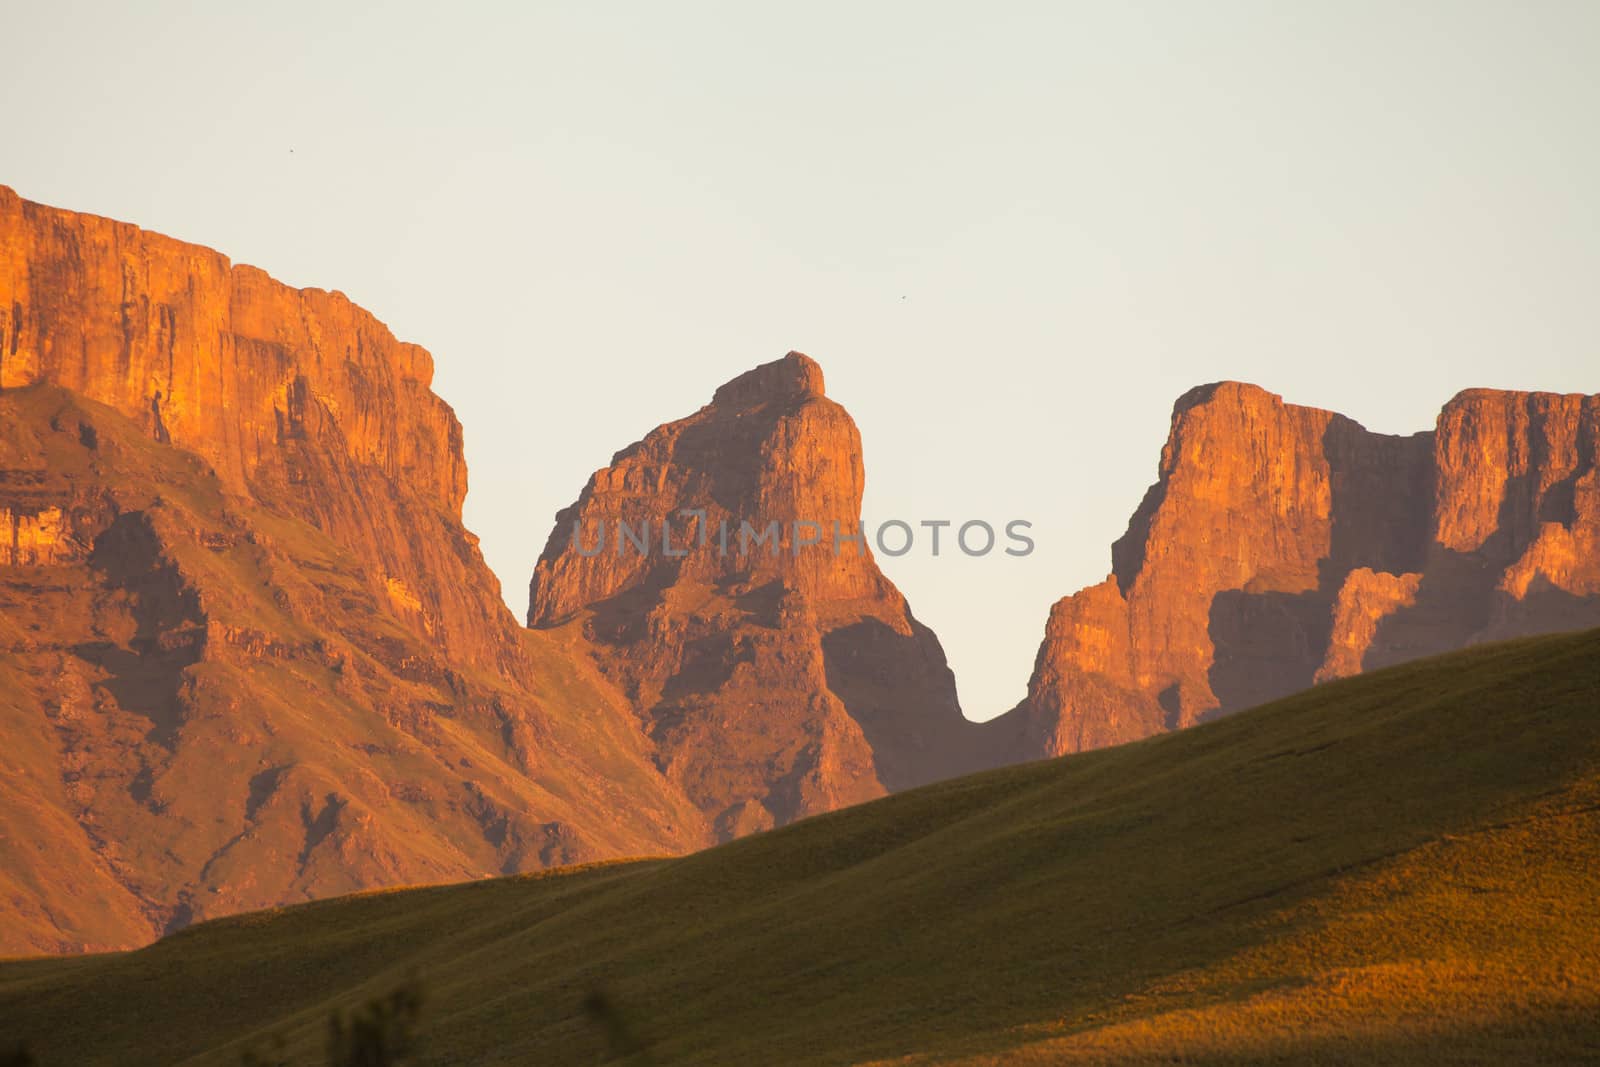 The Monk's Cowl peak, Drakensberg South Africa